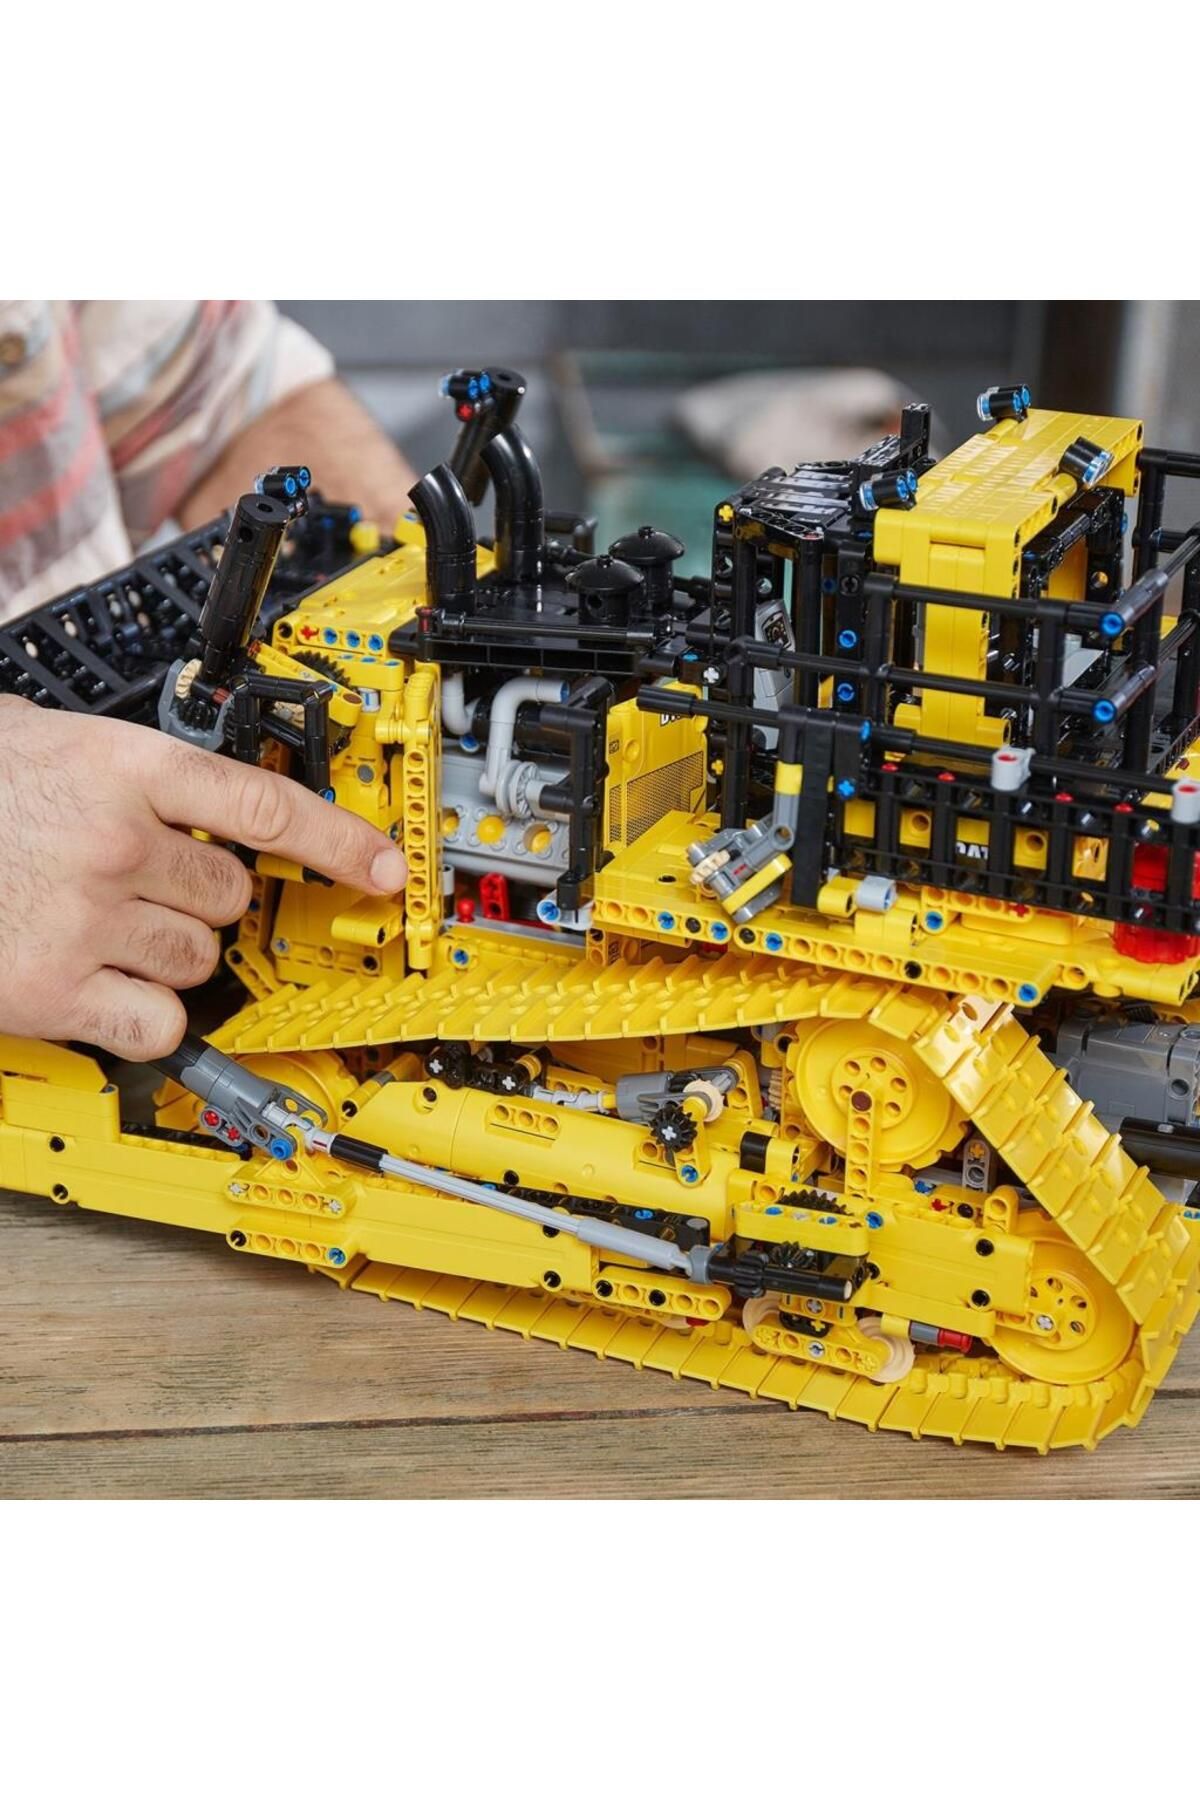 LEGO لگو بولدوزر ست ساختمان معتبر ماشین آلات ساختمانی برای بزرگسالان (3854 قطعه)